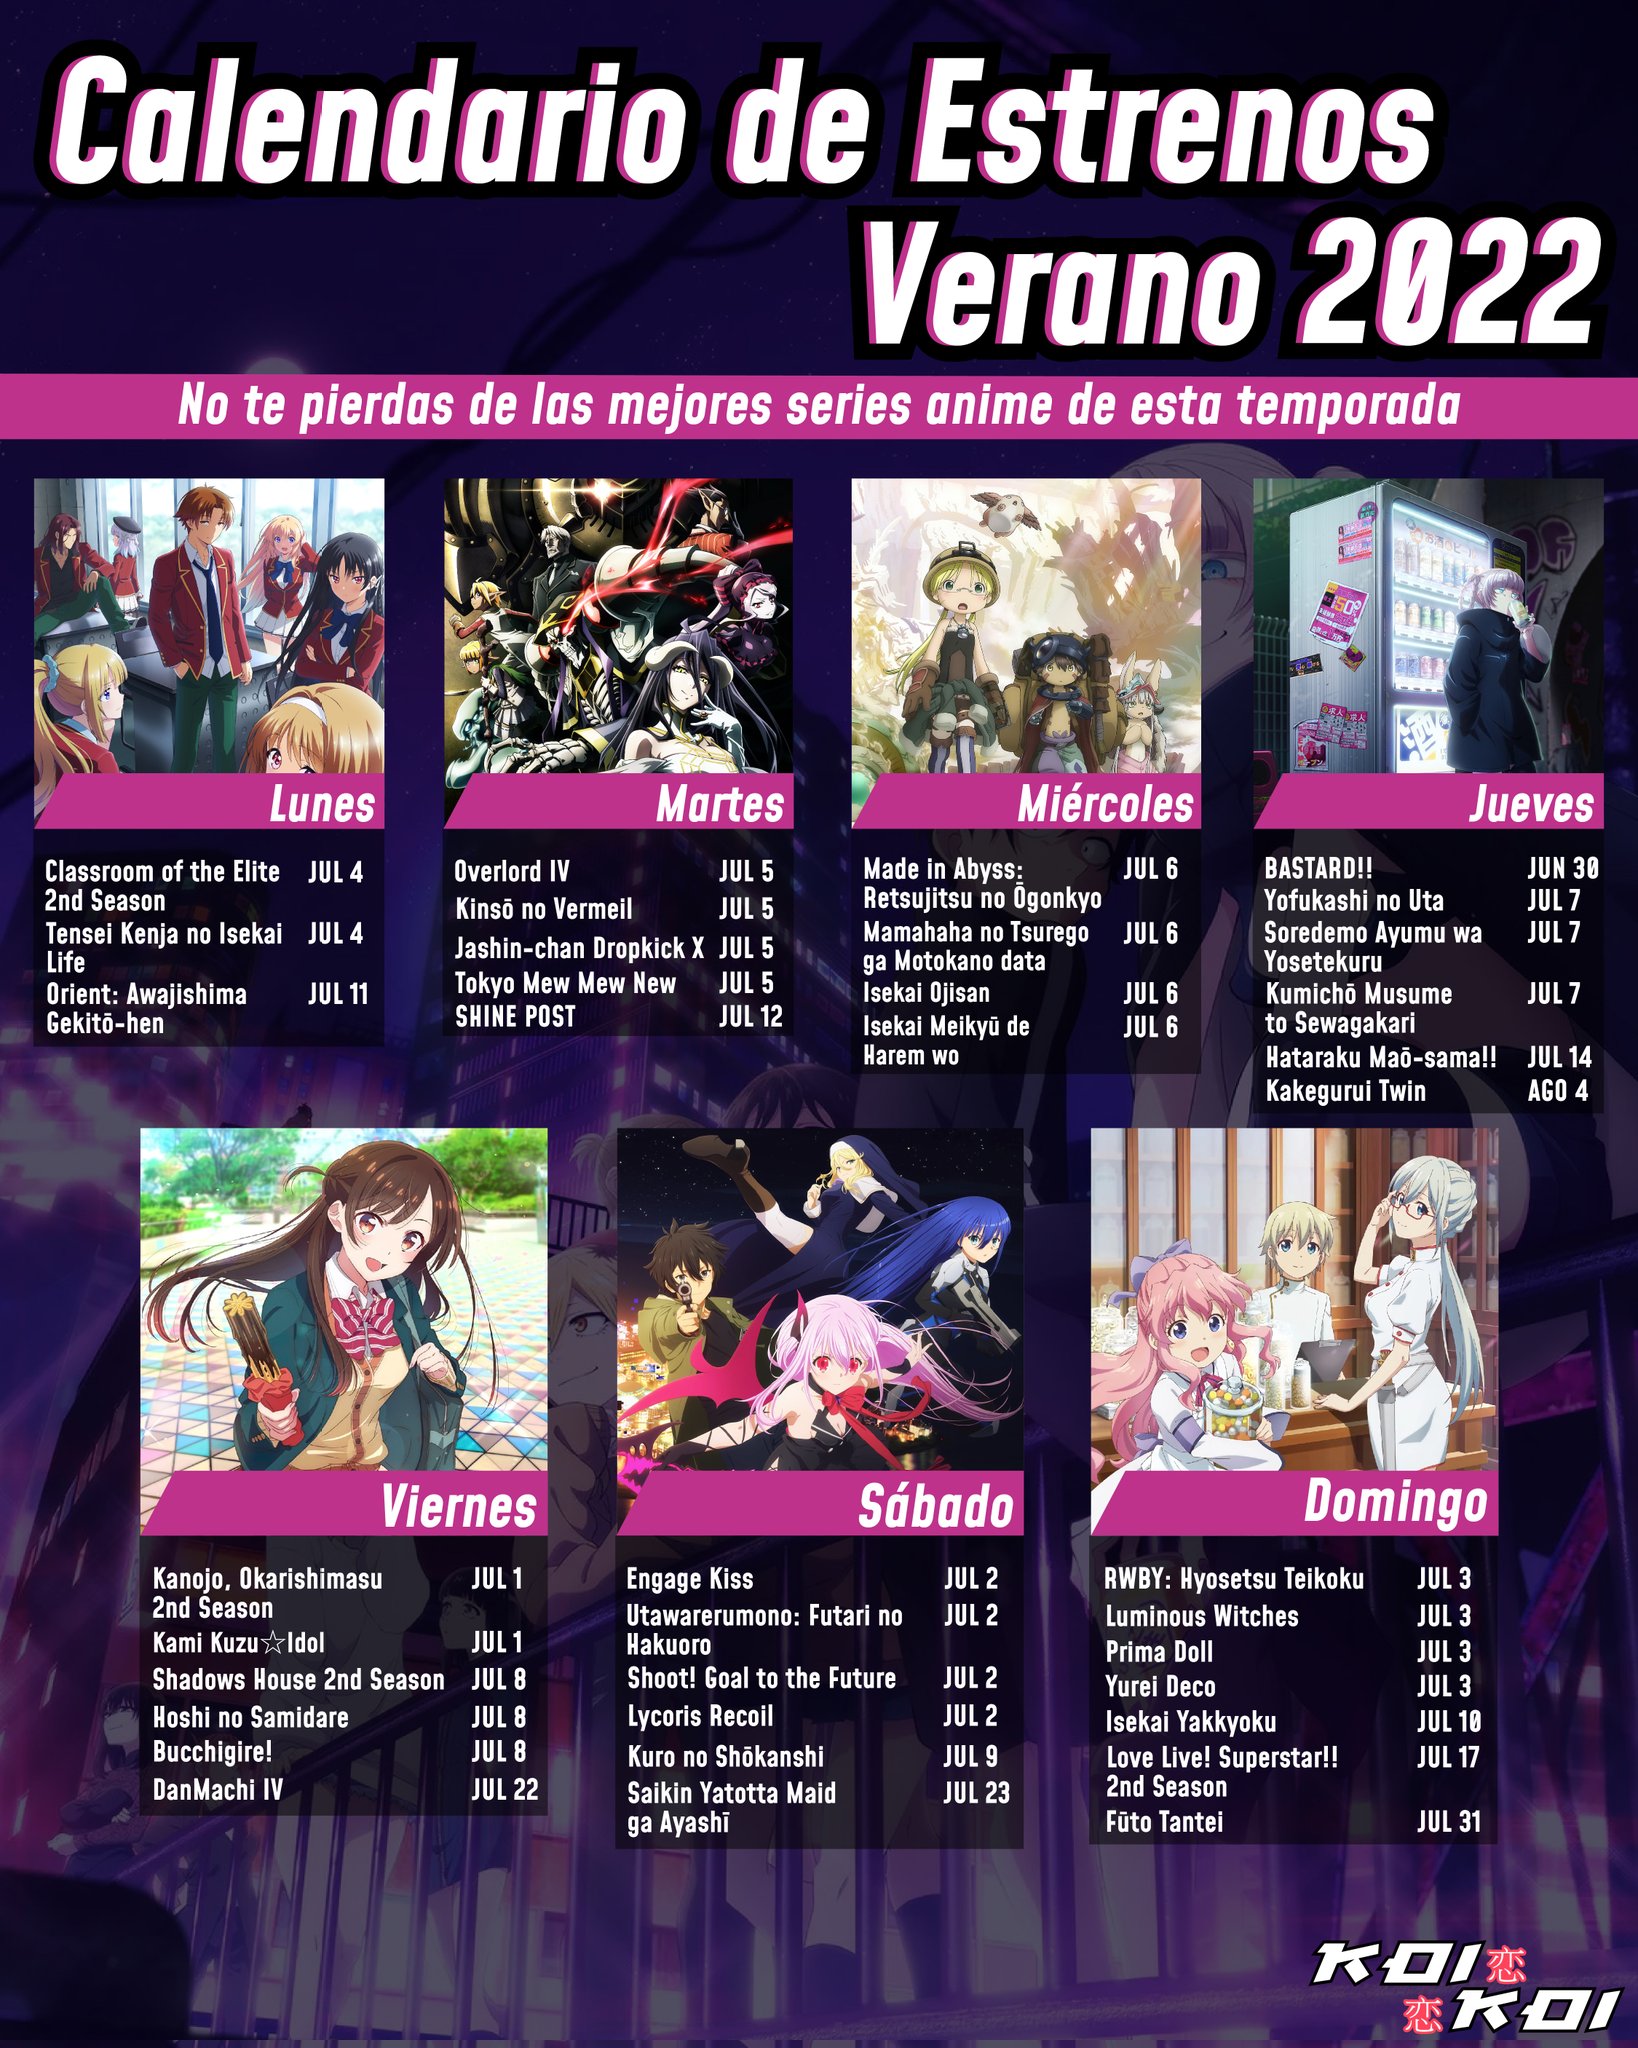 Los estrenos anime de la temporada de verano de 2023 •